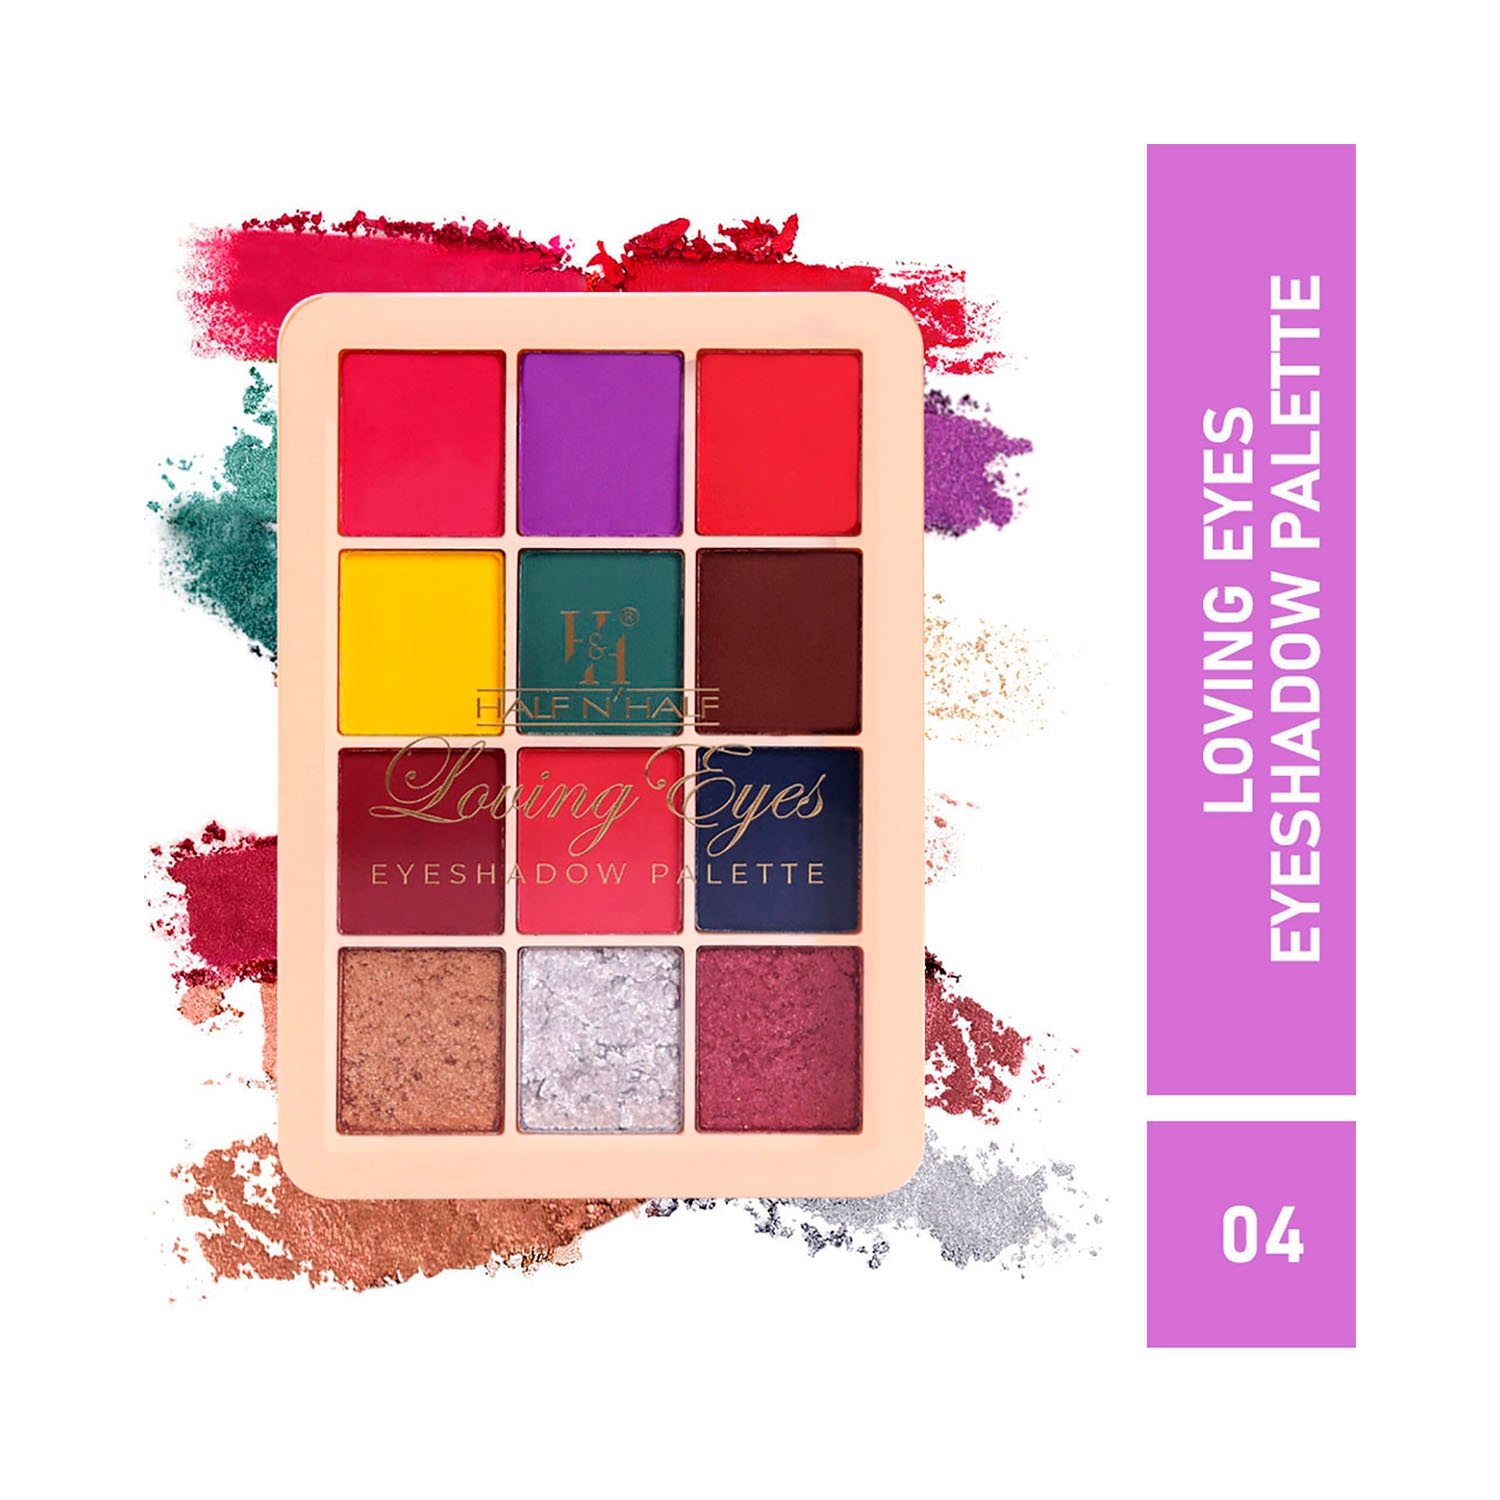 Half N Half | Half N Half 12 Colors Loving Eyeshadow Palette - 04 Shade (9.5g)